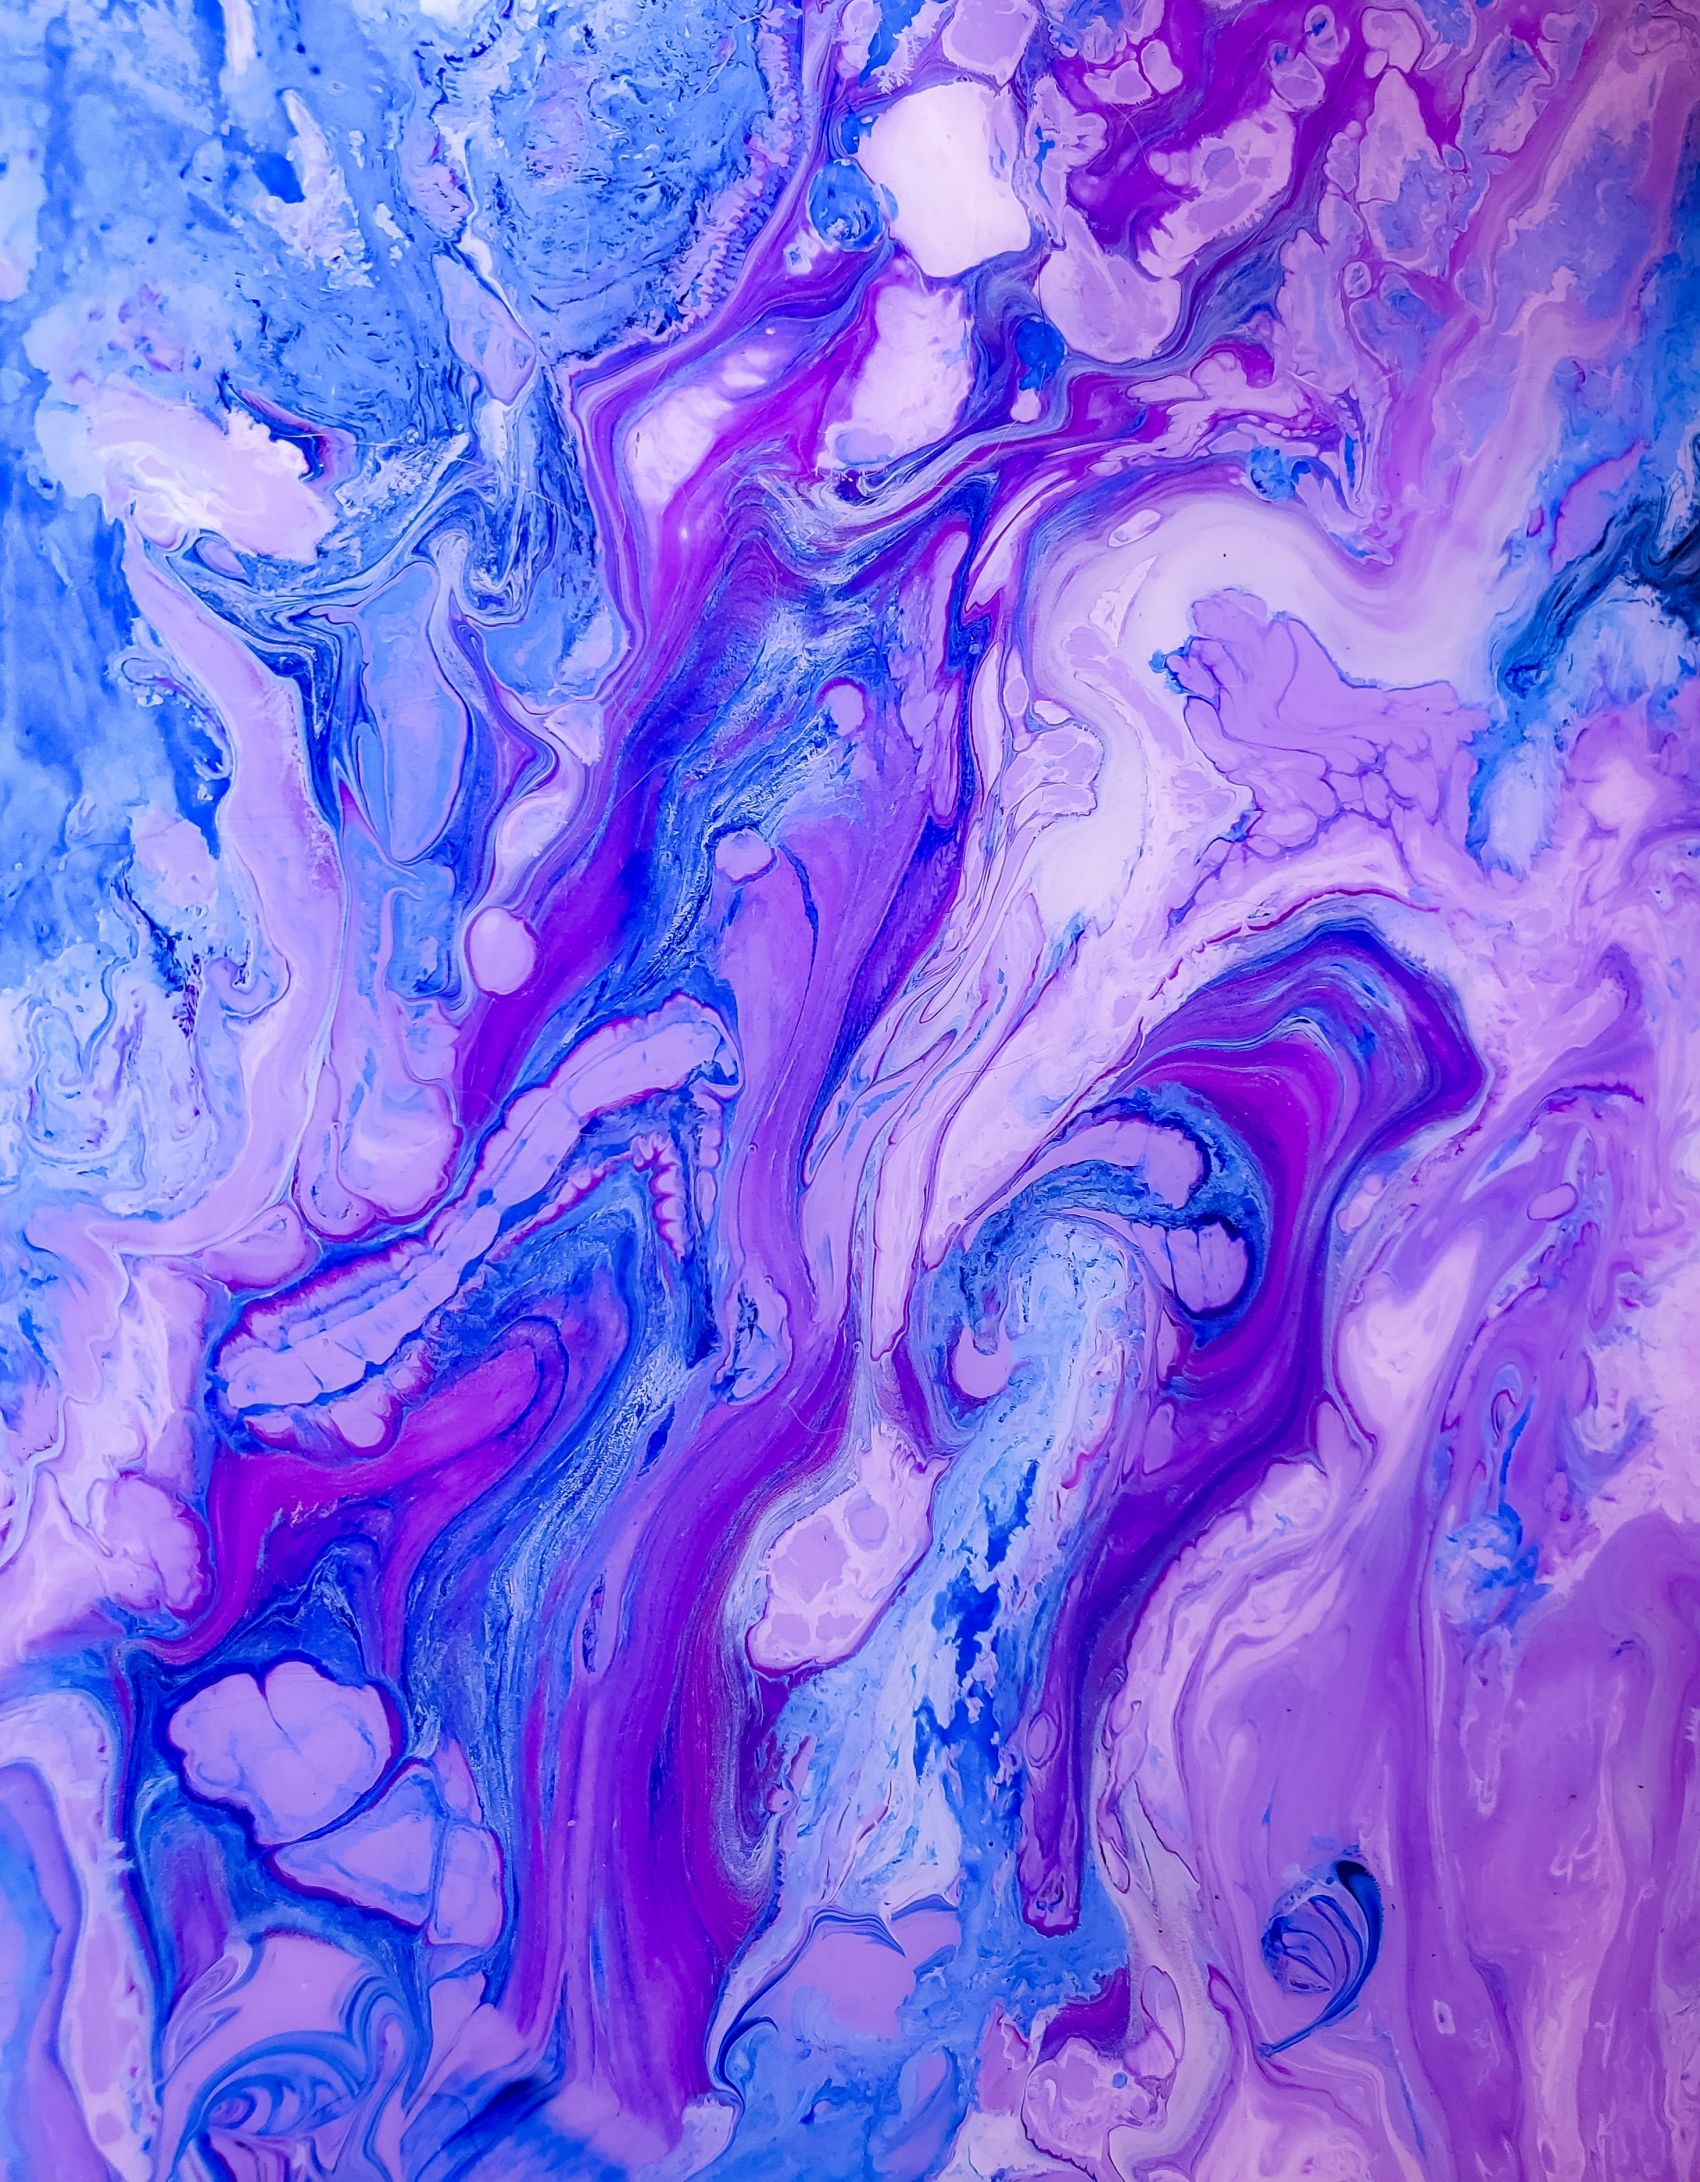 紫蓝炫彩背景 - 模板 - Canva可画